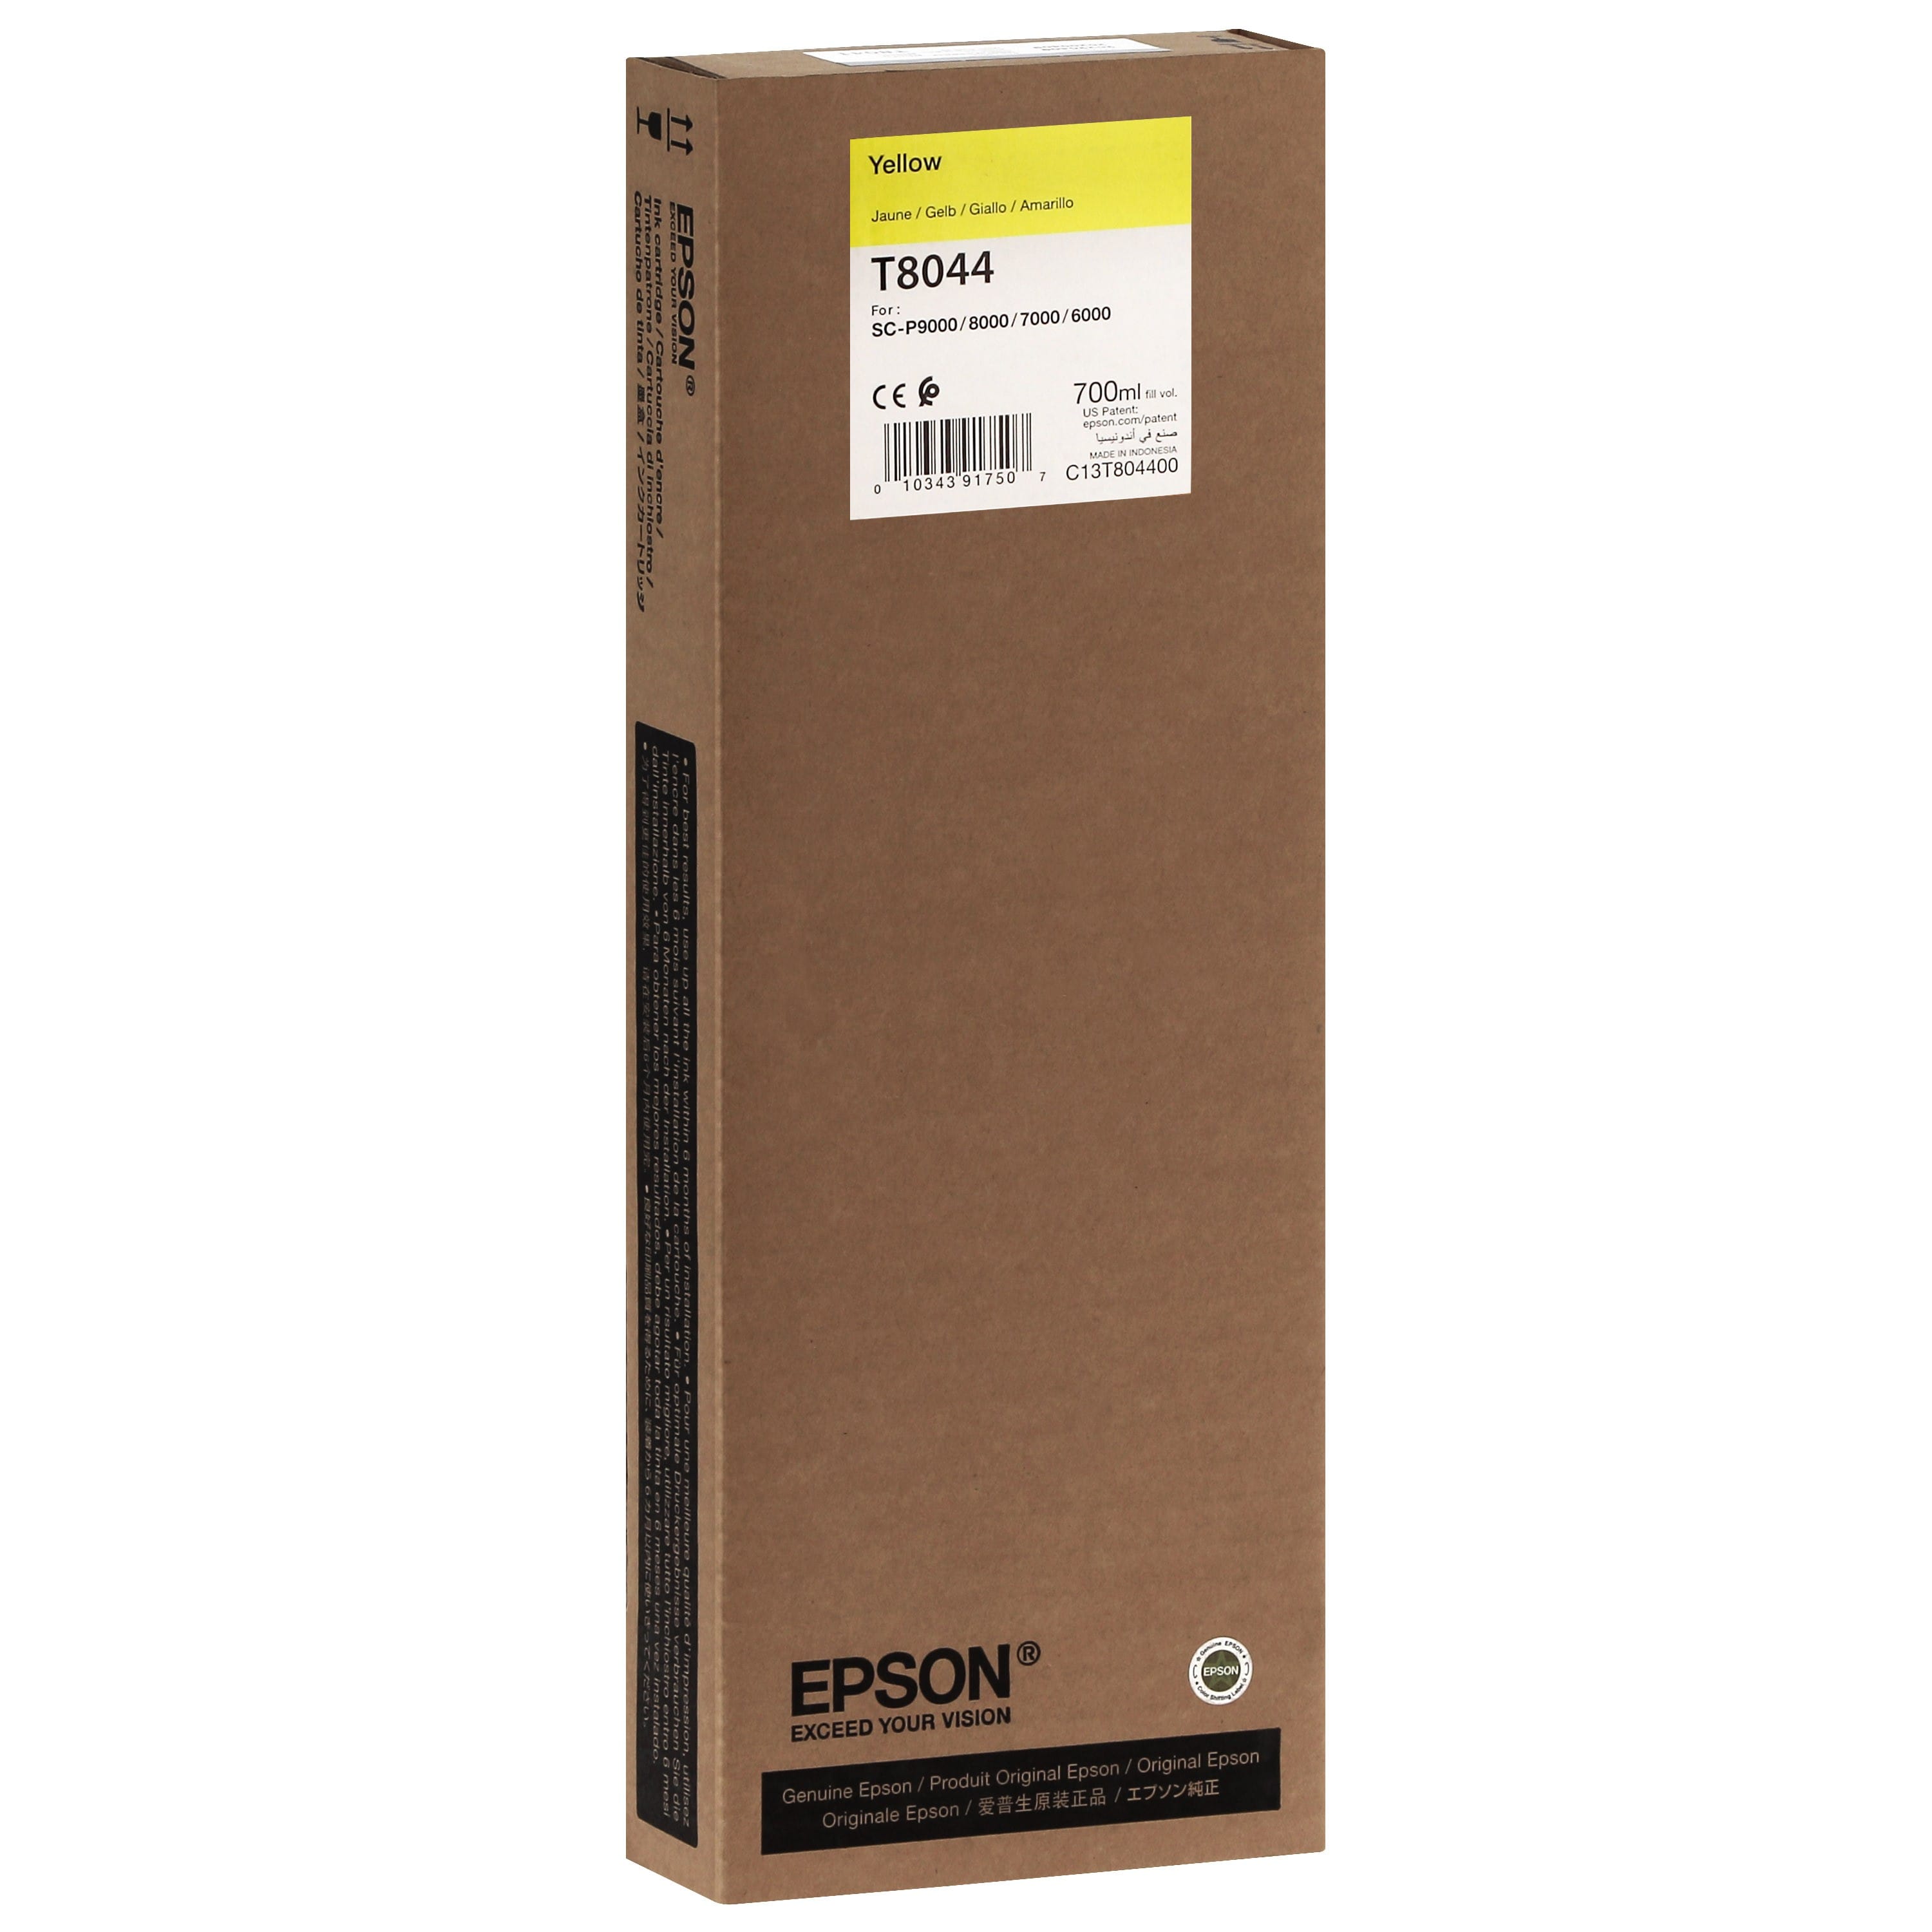 EPSON - Cartouche d'encre traceur T8044 Pour imprimante SC-P6000/7000/7000V/8000/9000/9000V Jaune - 700ml